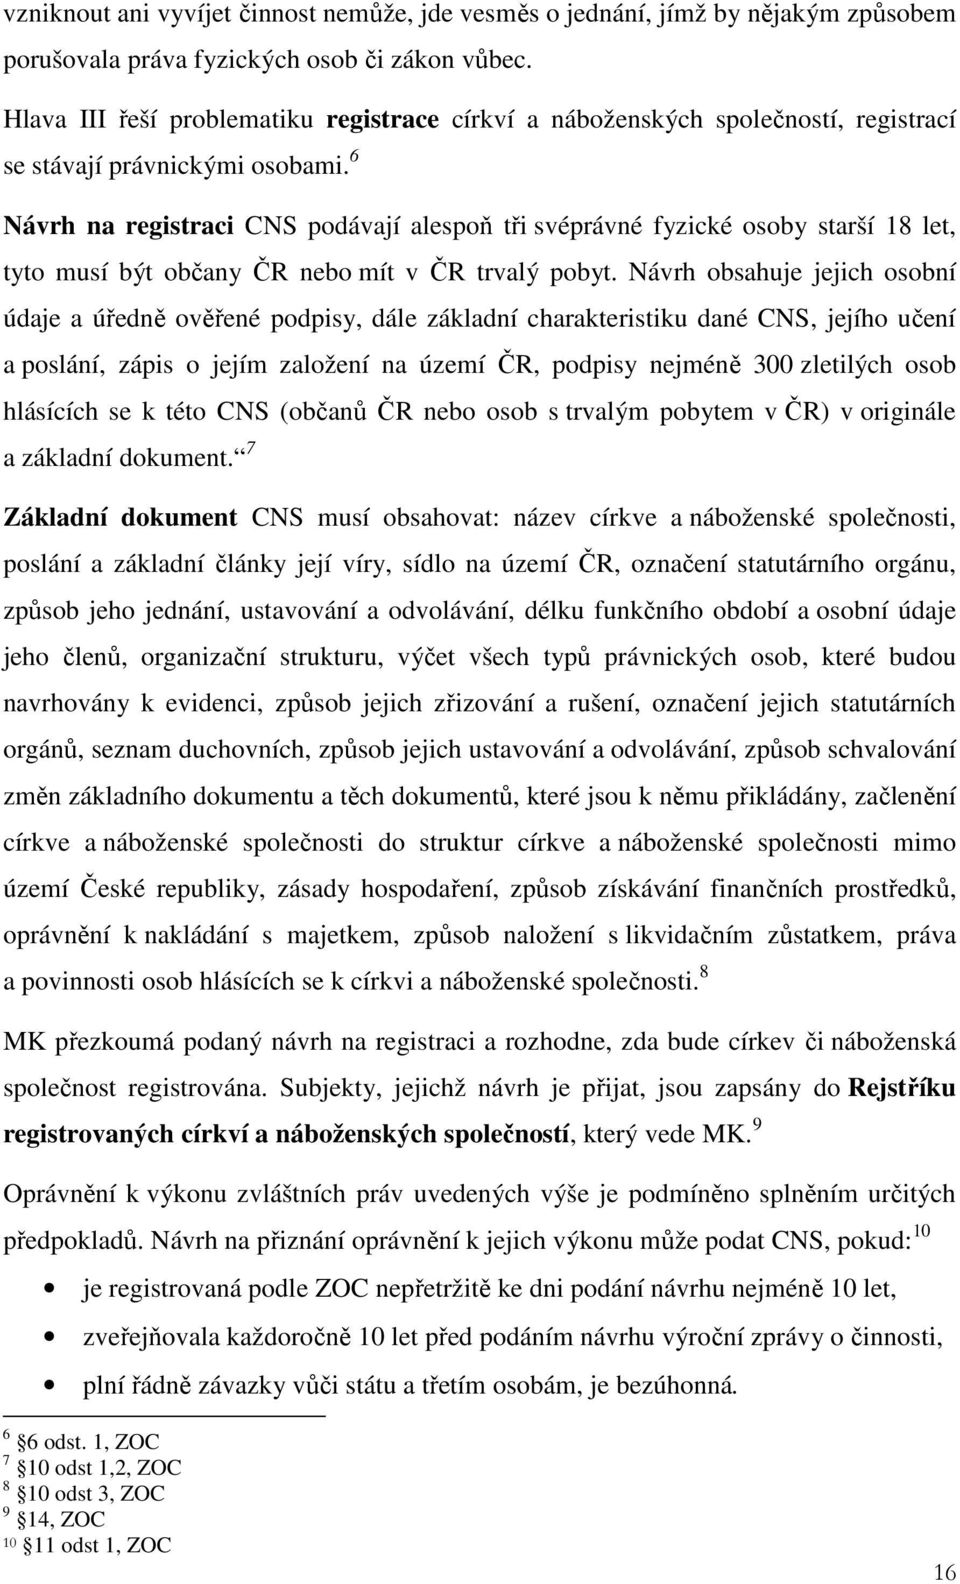 6 Návrh na registraci CNS podávají alespoň tři svéprávné fyzické osoby starší 18 let, tyto musí být občany ČR nebo mít v ČR trvalý pobyt.